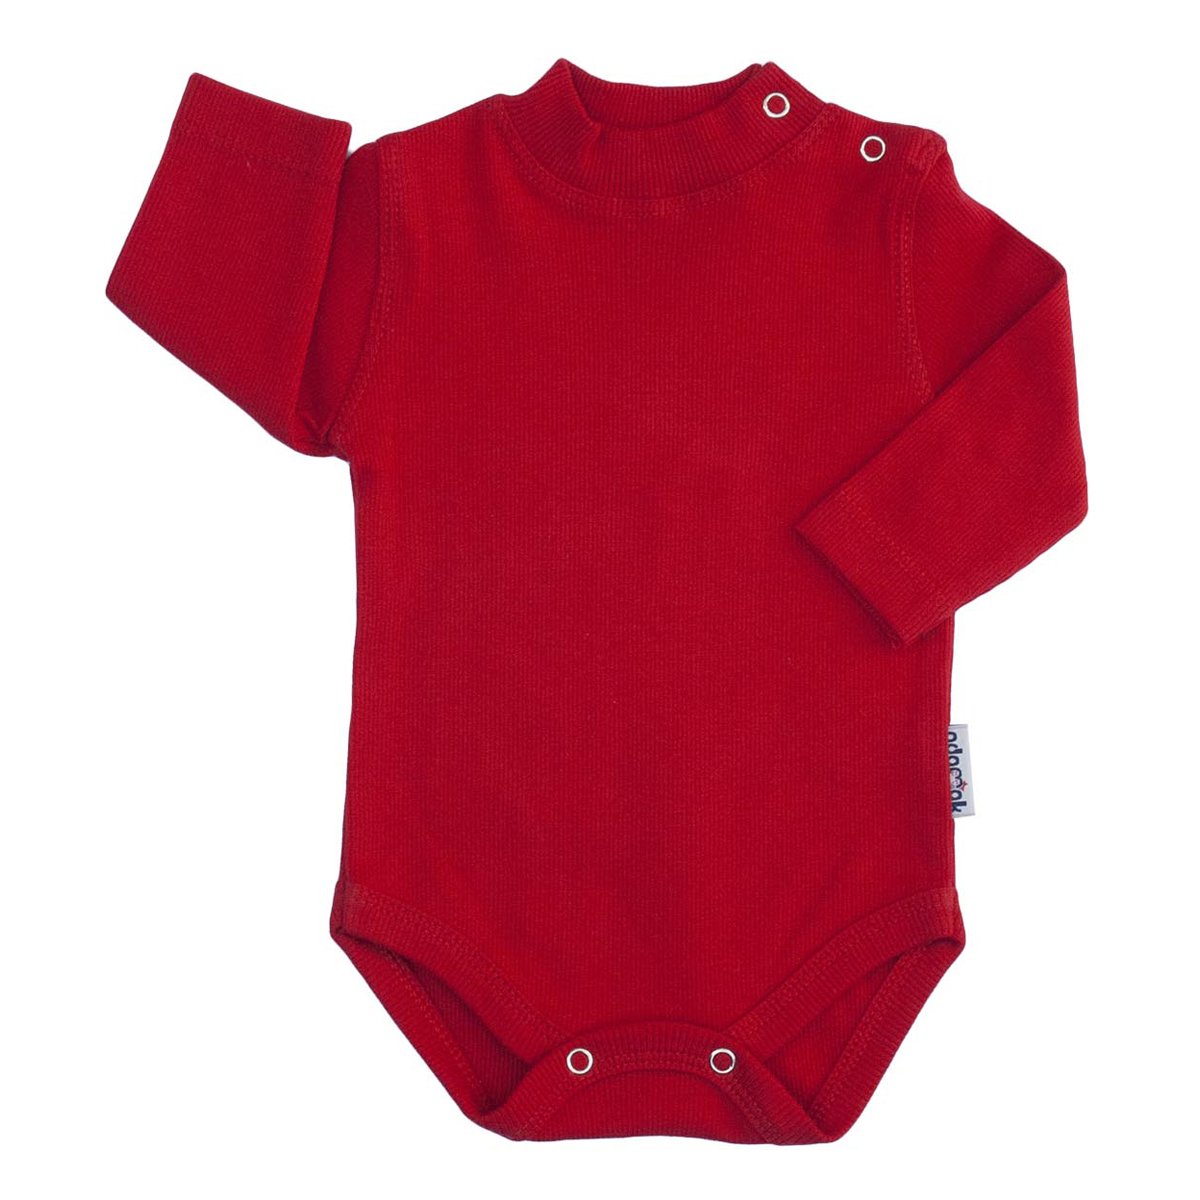 بادی آستین بلند نوزاد آدمک کد 176300 رنگ قرمز